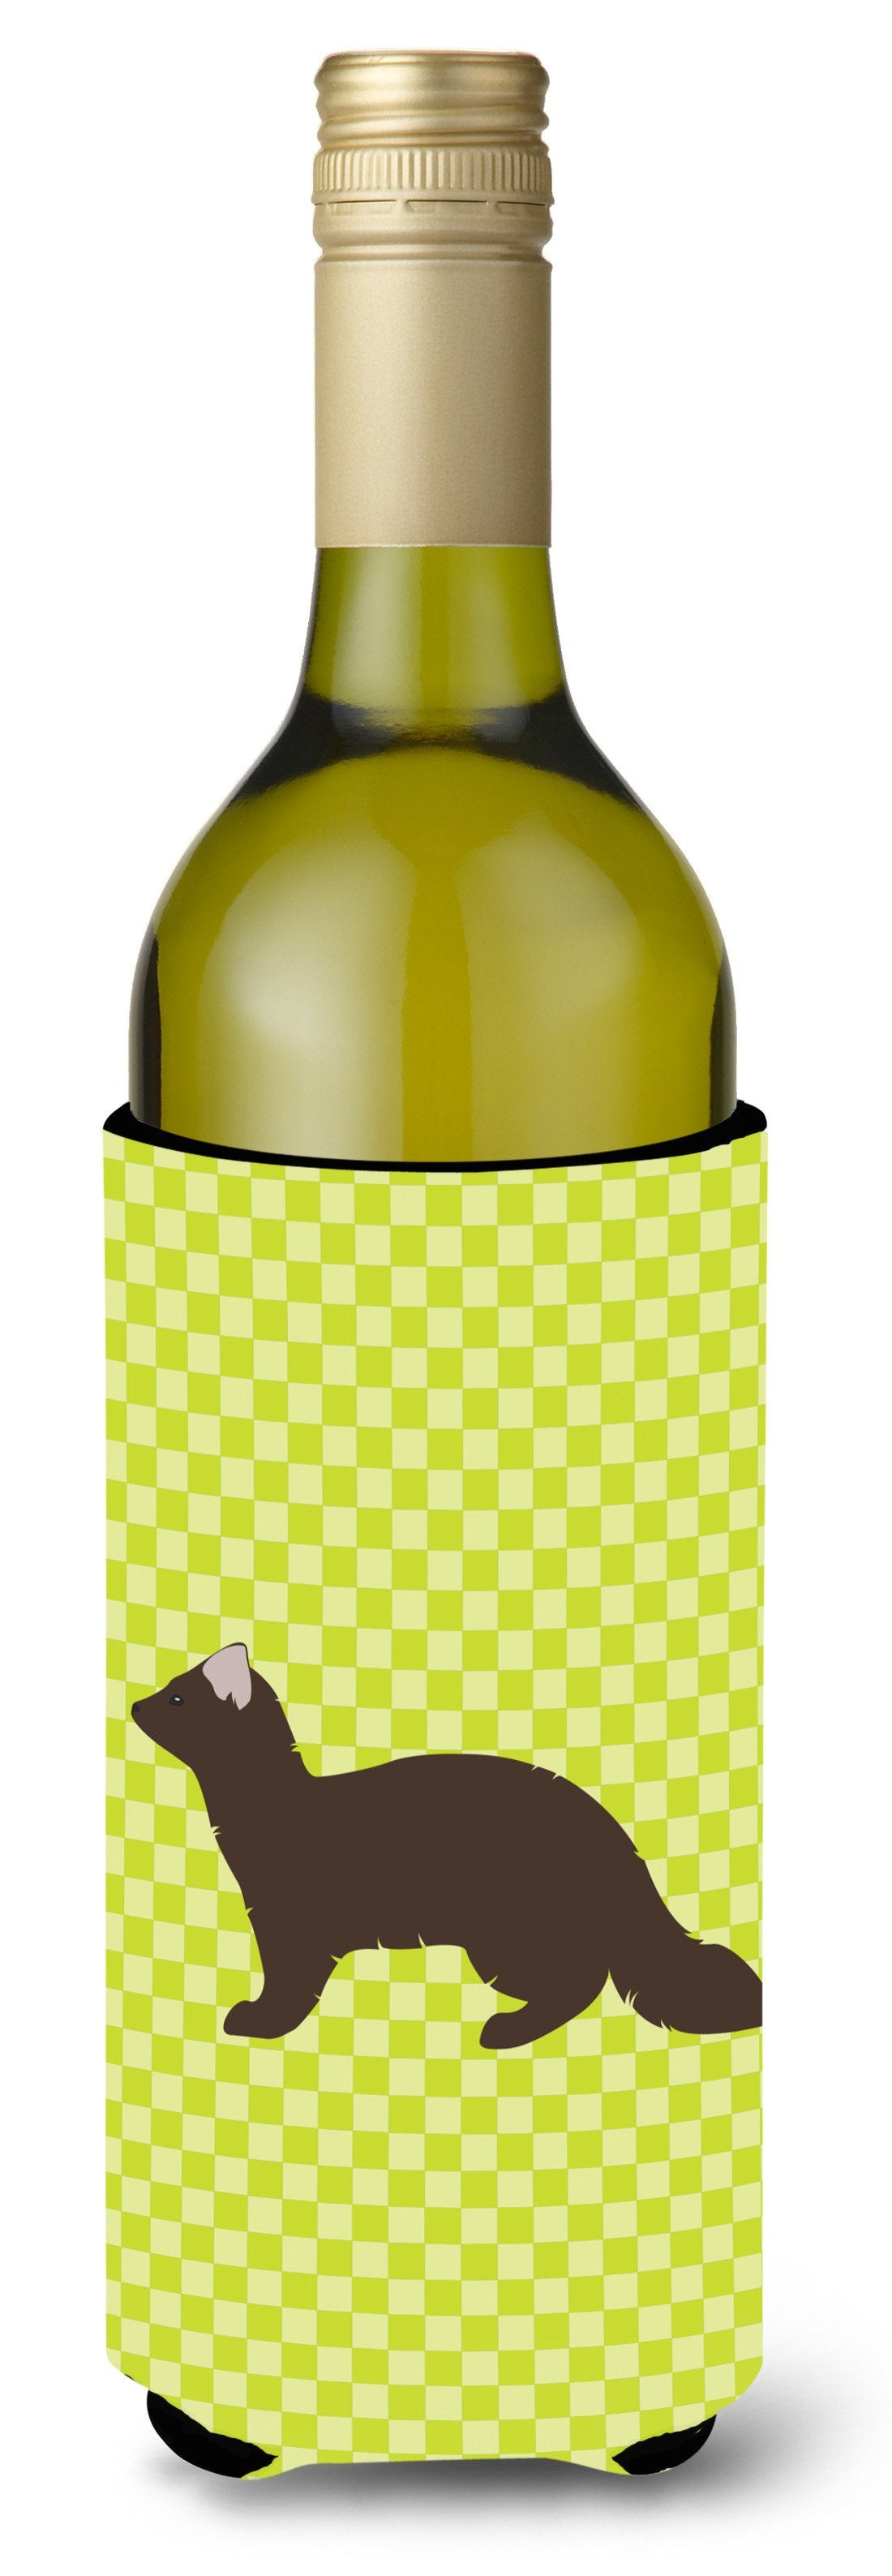 Sable Marten Green Wine Bottle Beverge Insulator Hugger BB7695LITERK by Caroline's Treasures